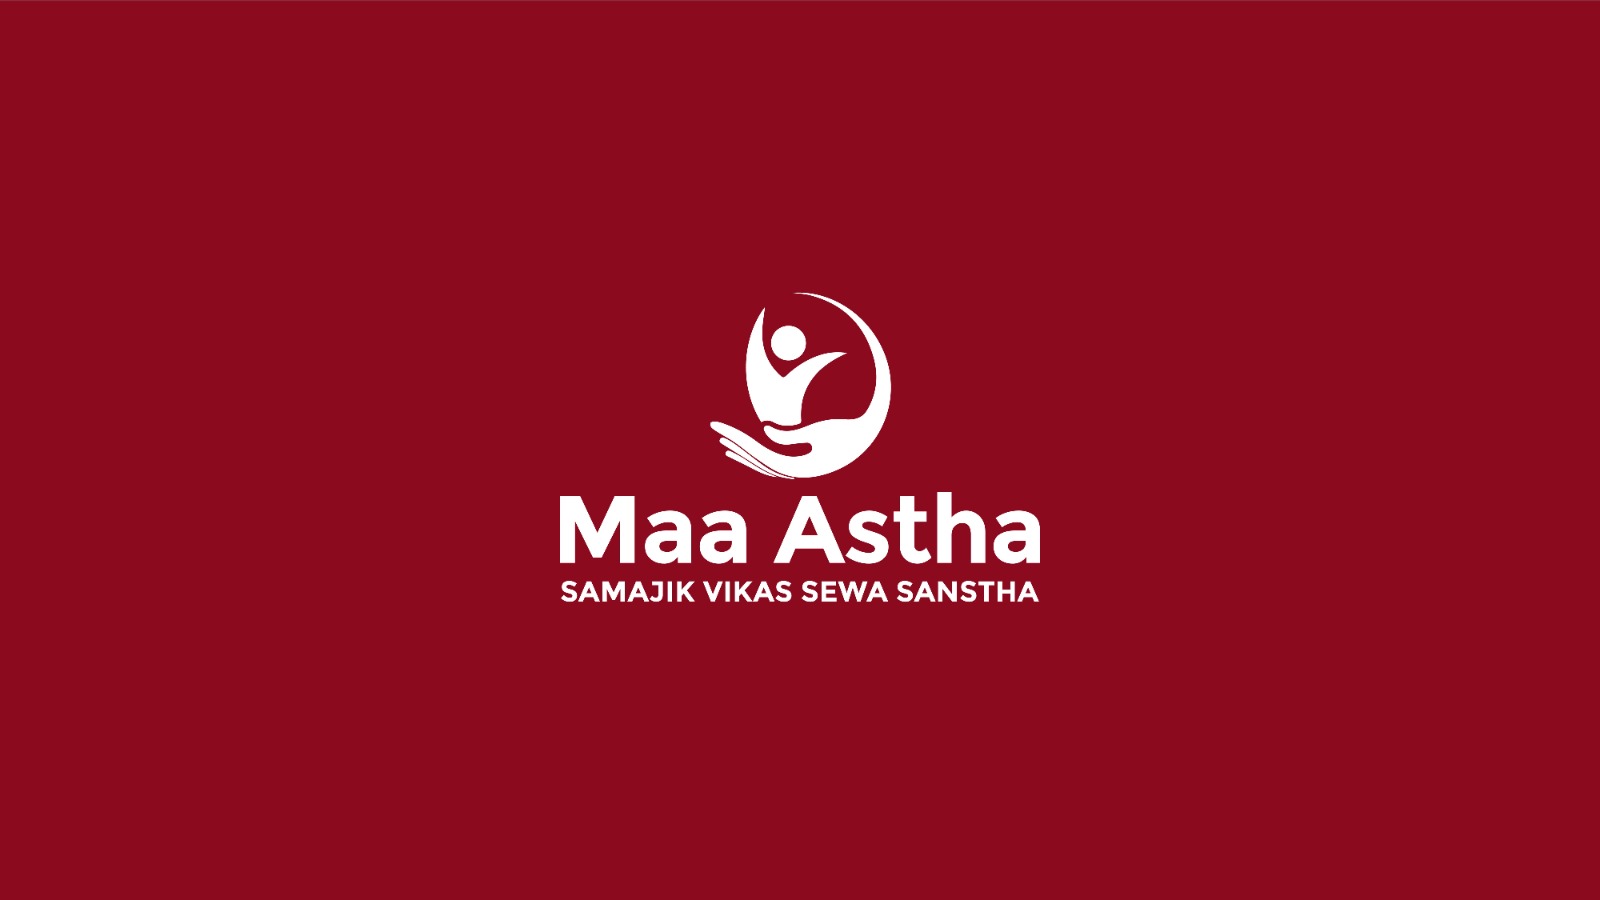 Maa Astha Samajik Vikas Sewa Sanstha